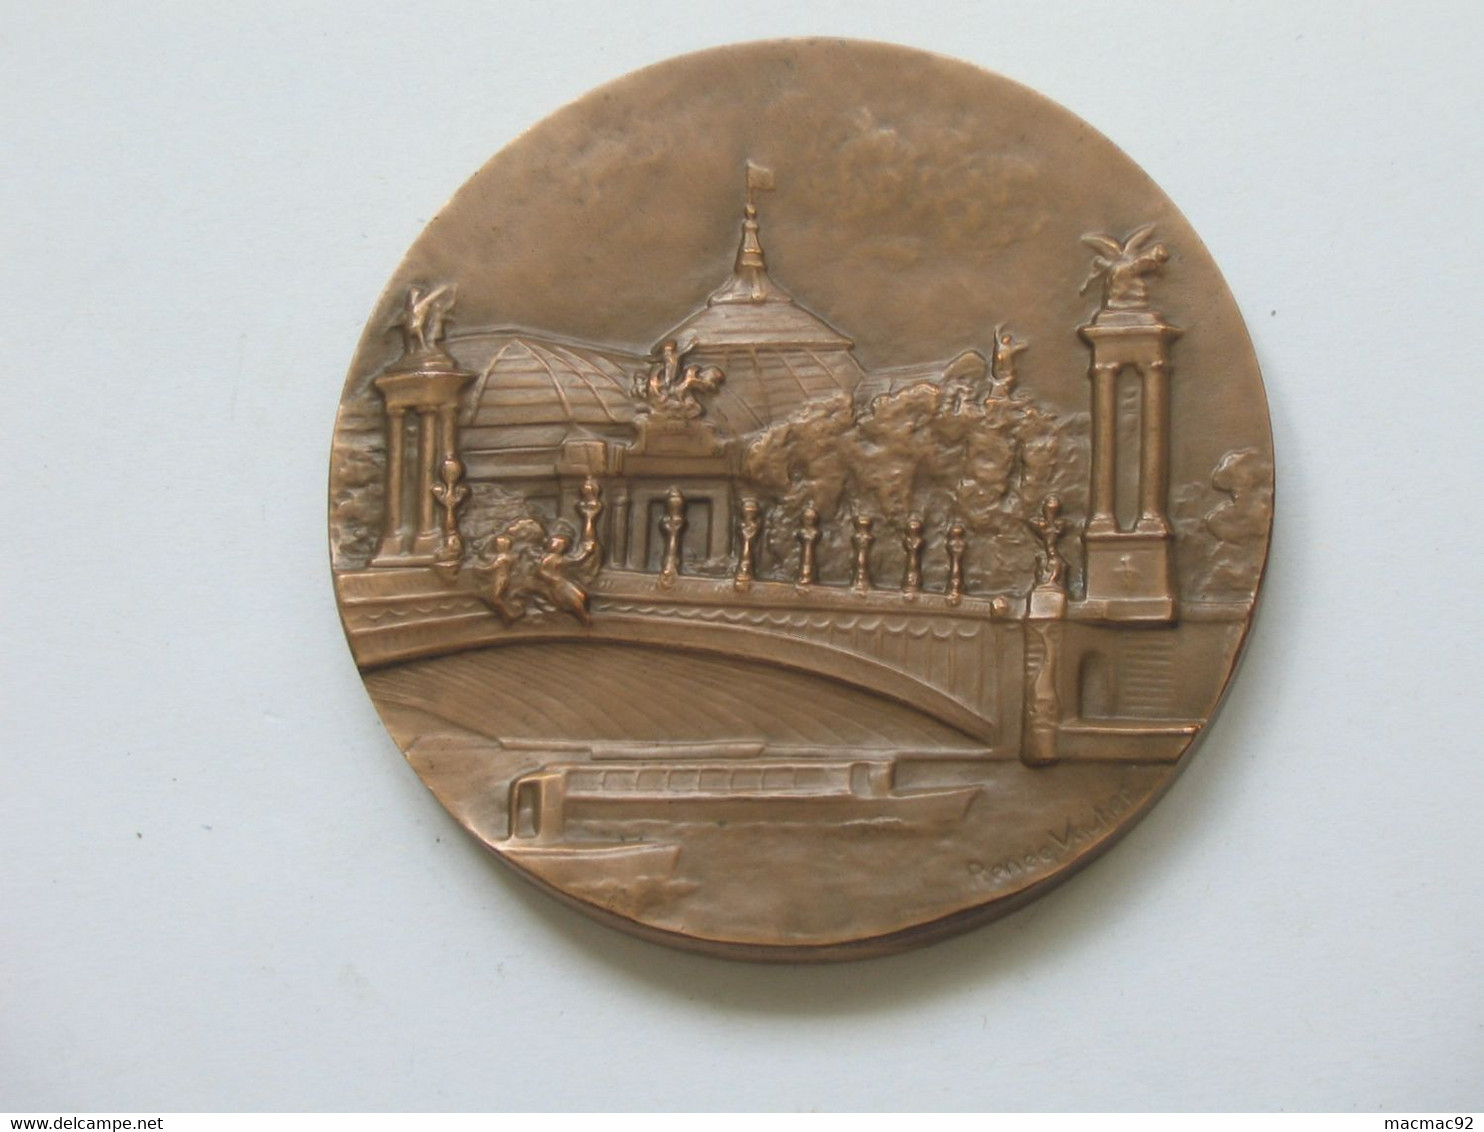 Médaille EXPOSITION PHILATELIQUE INTERNATIONALE 1975 - ARPHILA 75 PARIS  **** EN ACHAT IMMEDIAT **** - Professionnels / De Société